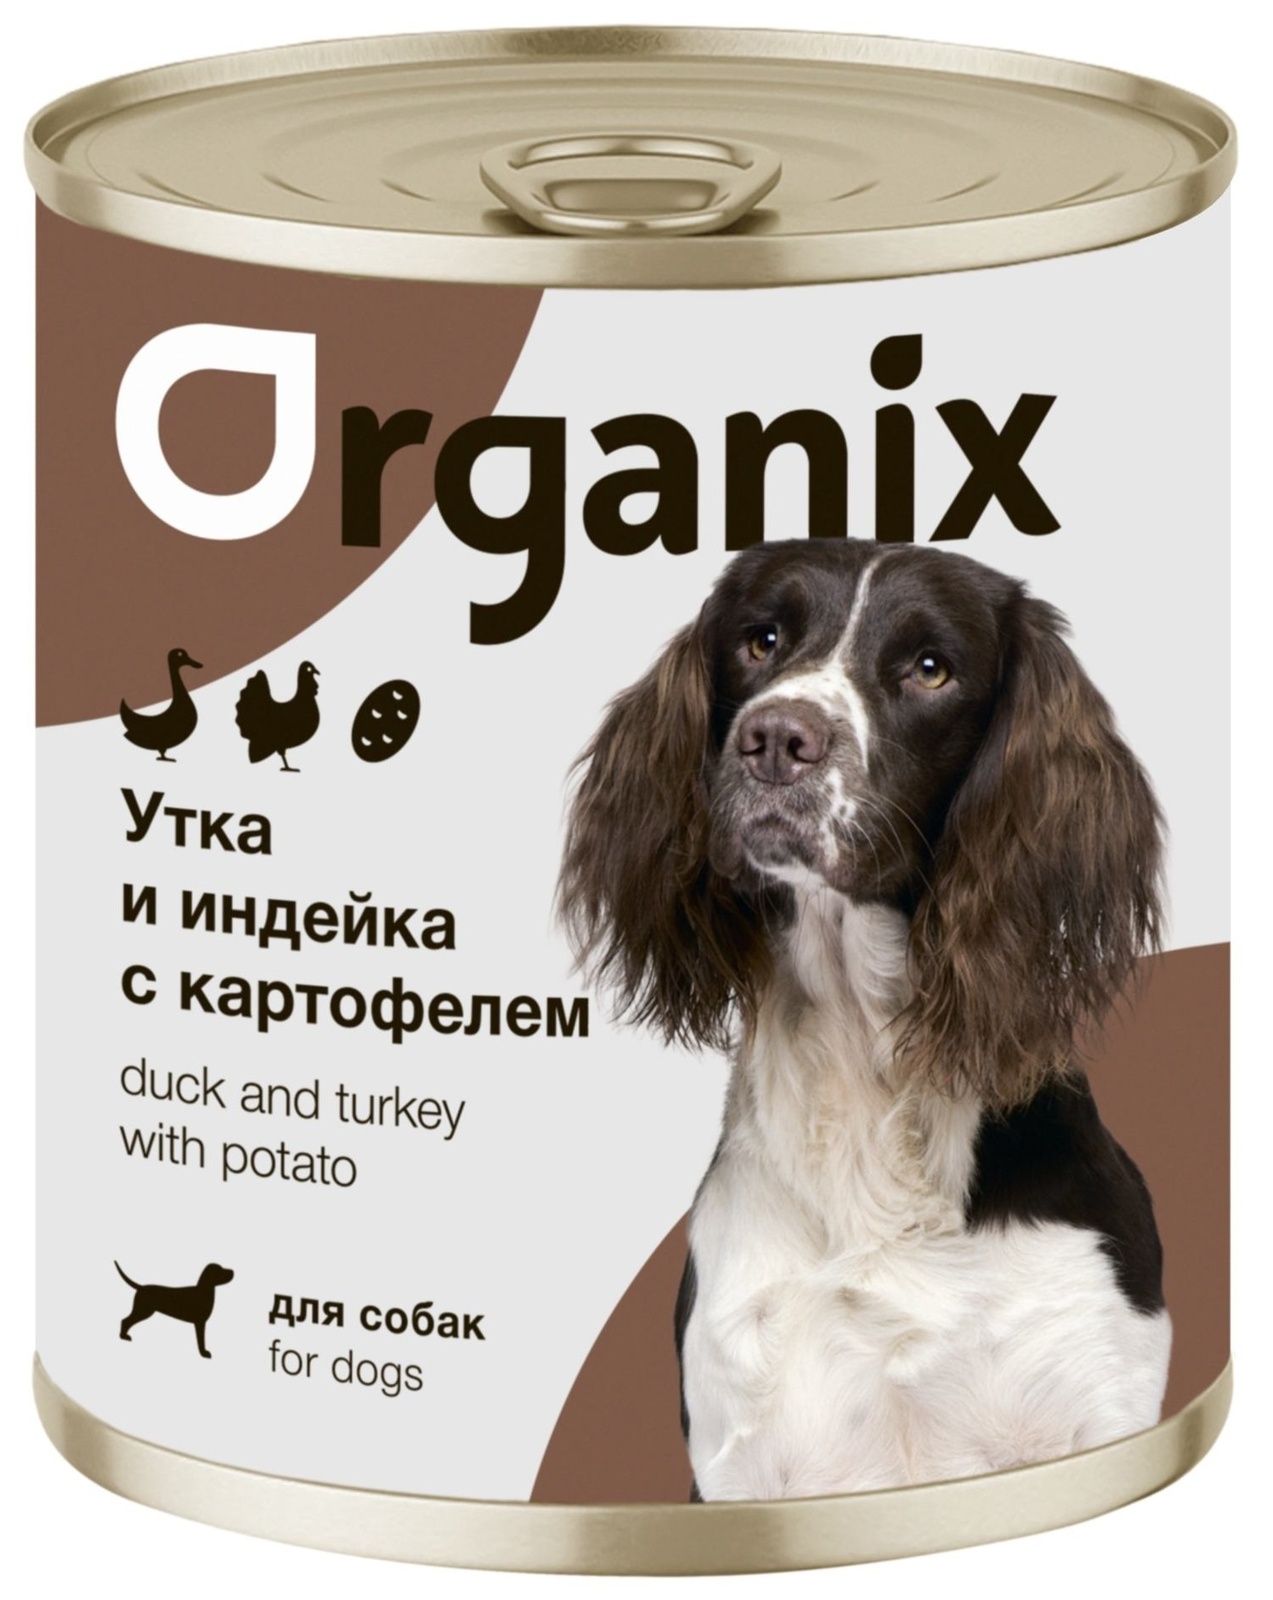 Organix консервы Organix консервы для собак Утка, индейка, картофель (750 г) organix консервы organix консервы для собак сочная утка с печенью и тыквой 750 г